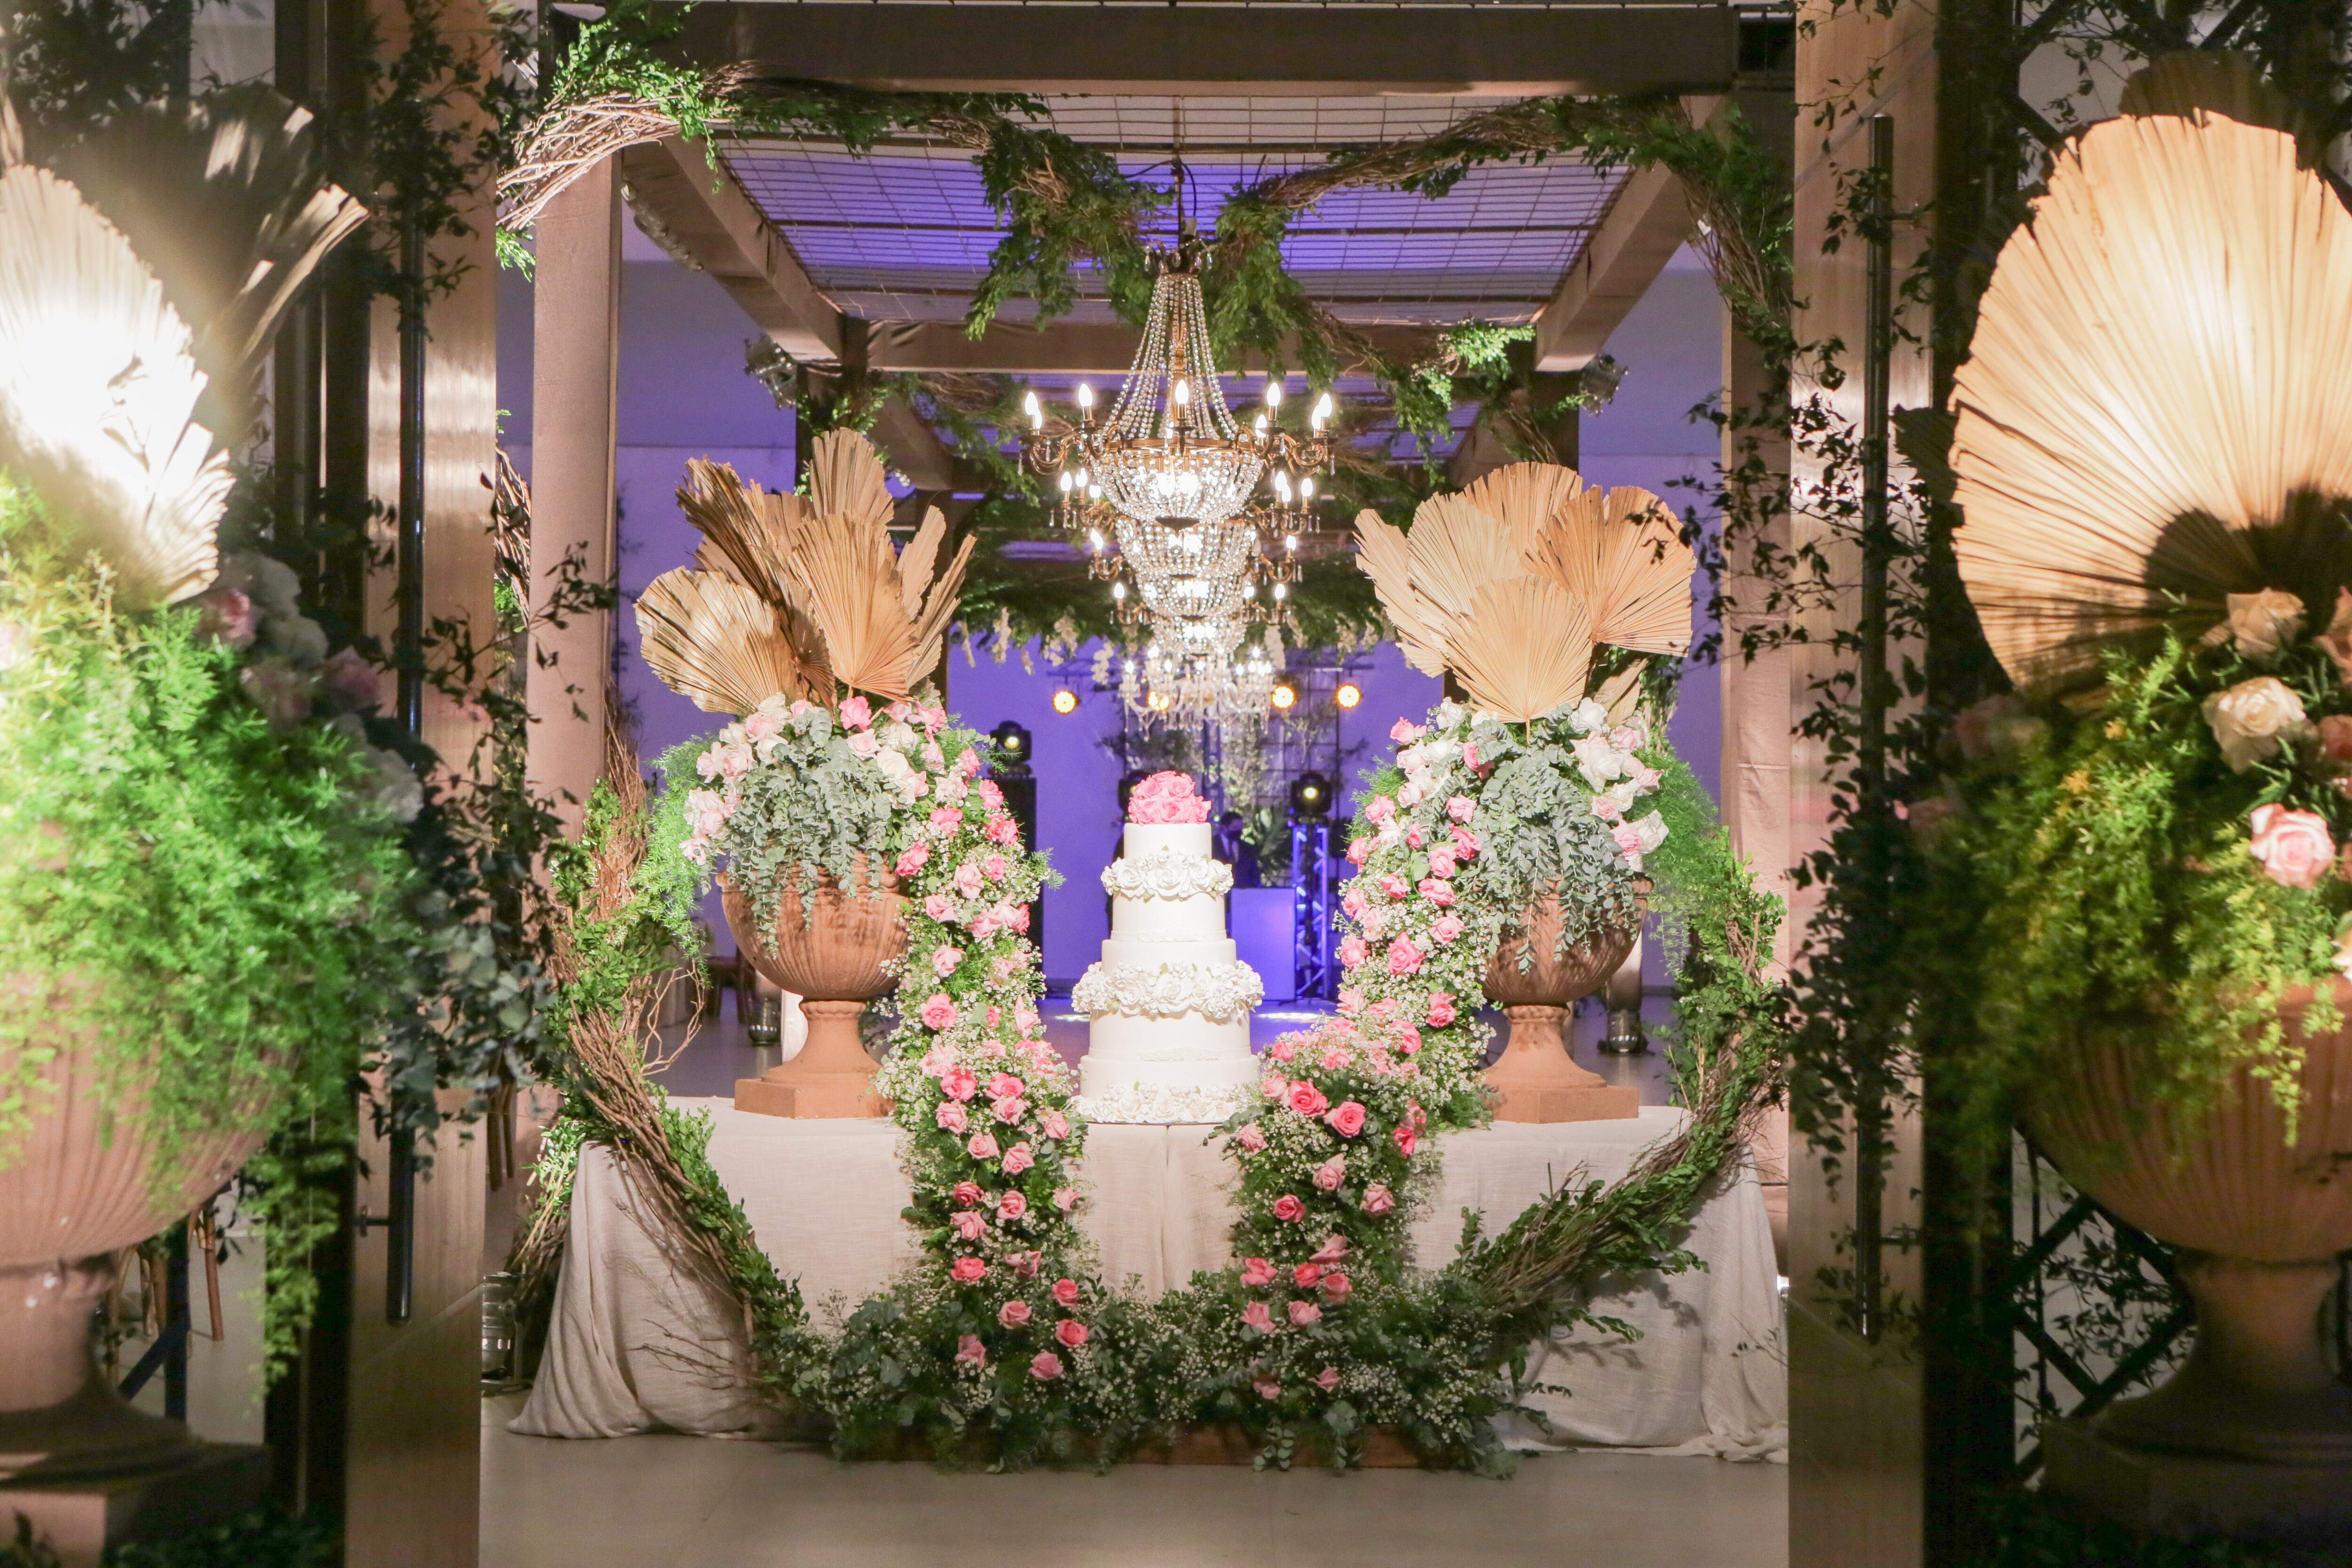 La fiesta fue ambientada con arreglos de flores naturales, follajes por José Benítez, en un estilo greenery, con rosas en tonos claros.